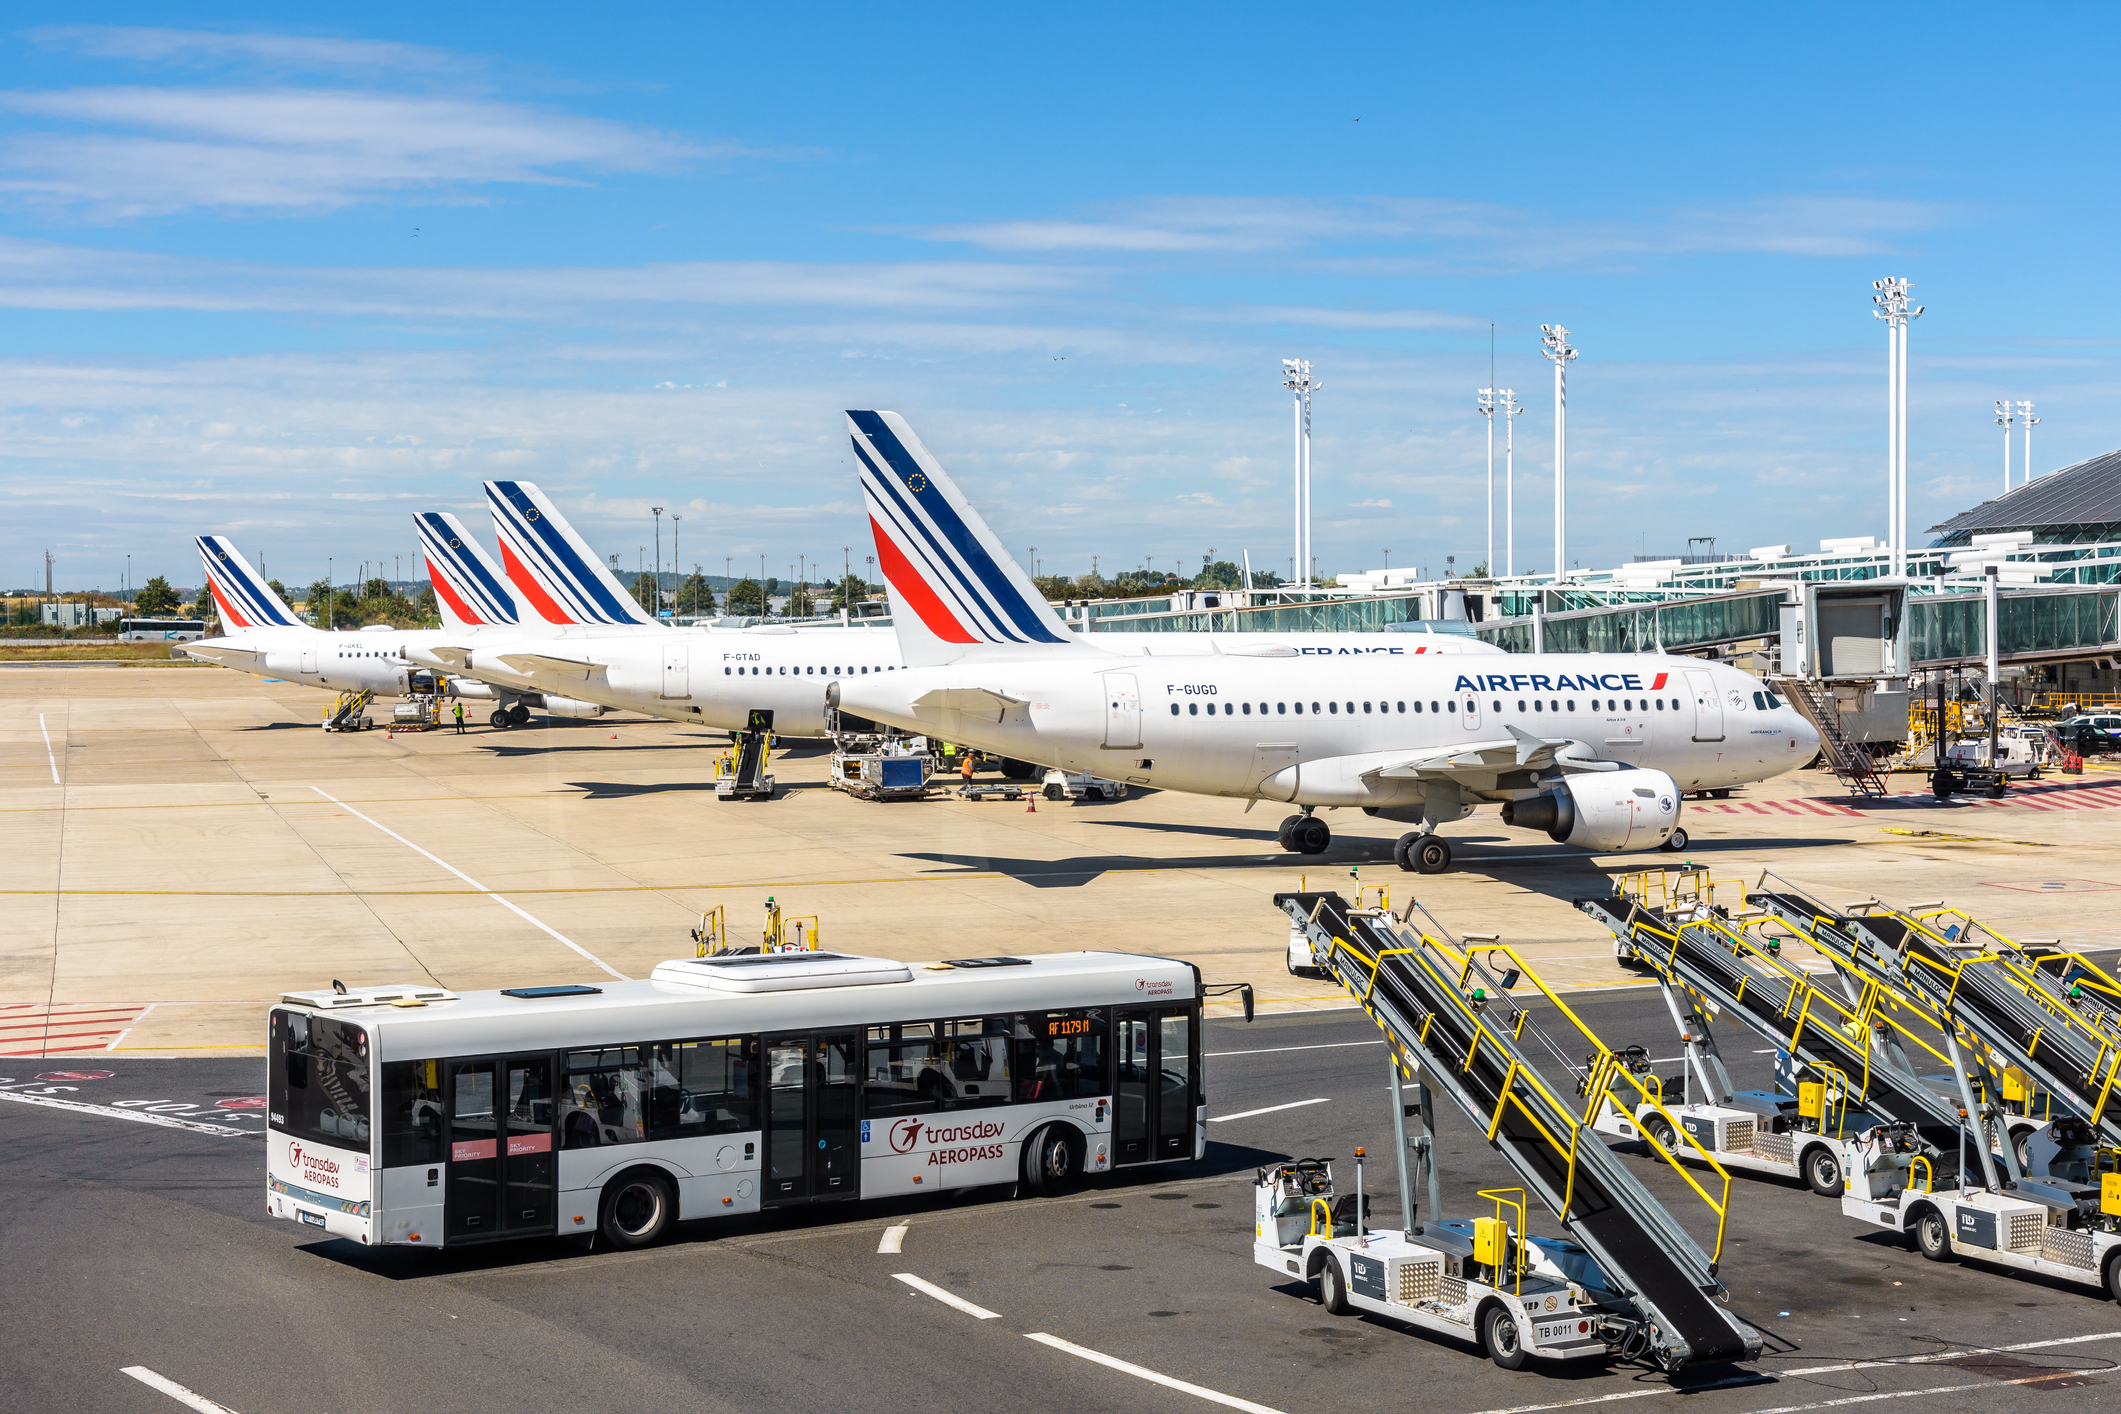 En række Air France-fly er parkeret side om side, i forgrunden kører en bus passagerer hen til flyene.